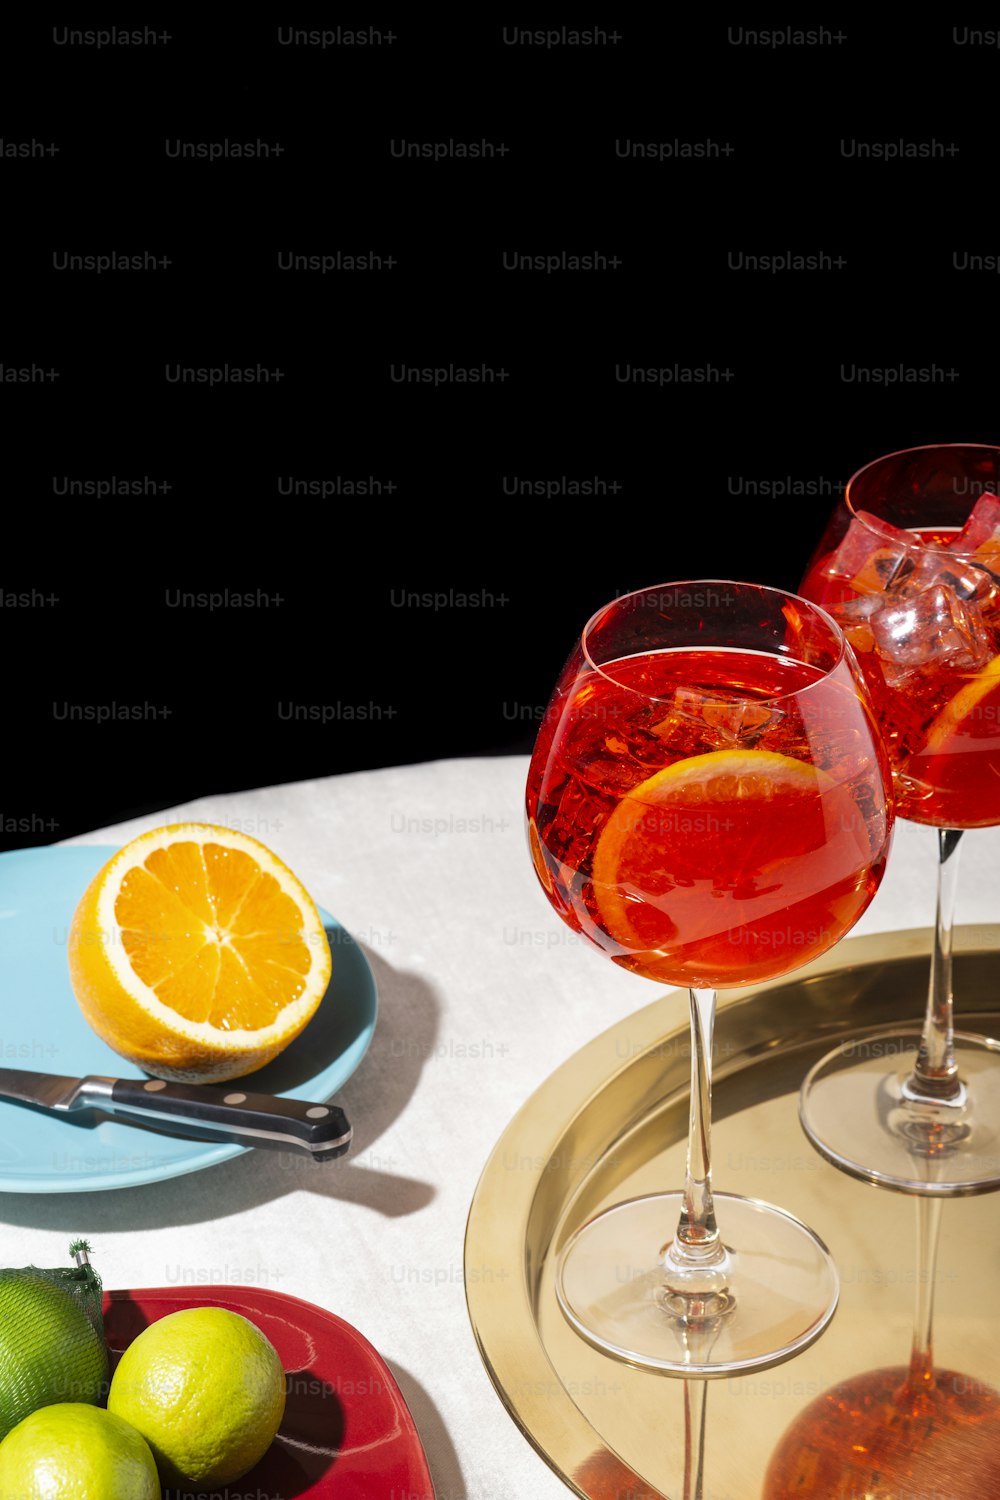 Spritz veneziano, un cocktail IBA con Prosecco o spumante bianco, bitter, soda, ghiaccio e una fetta d'arancia, in un calix su un tavolo, stile grafico pop